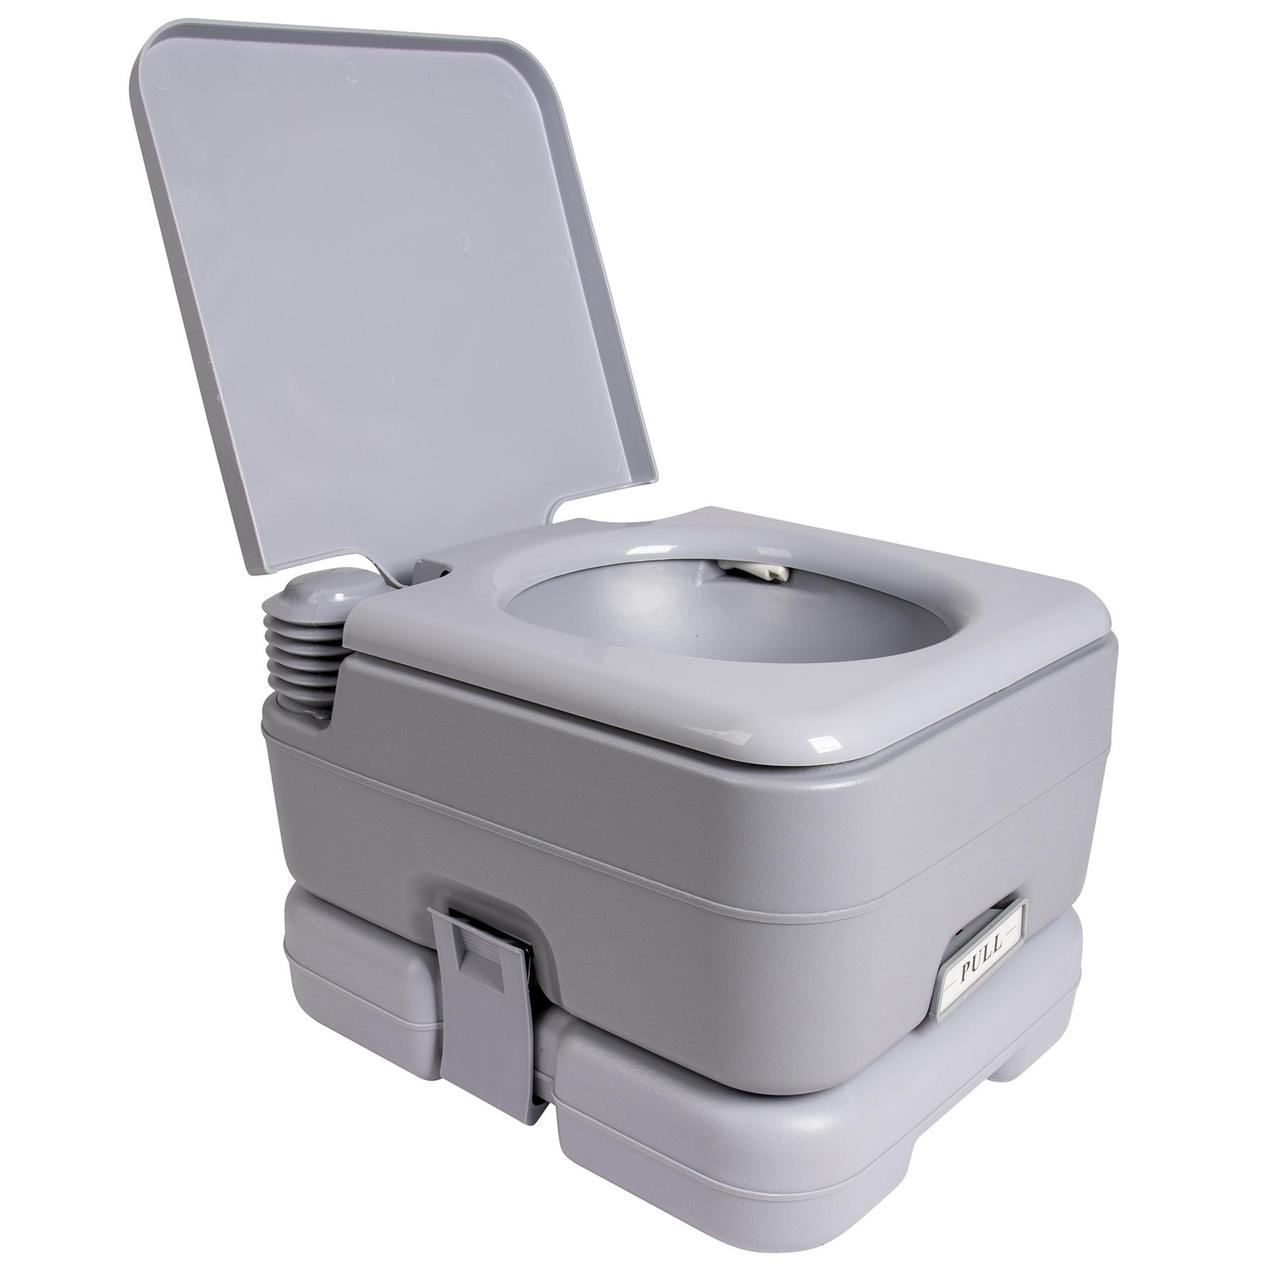 Біотуалет Bo-Camp Portable Toilet Flush 10 Liters Grey (5502825) туалет для дачі, кемпінгу, догляду за хворими